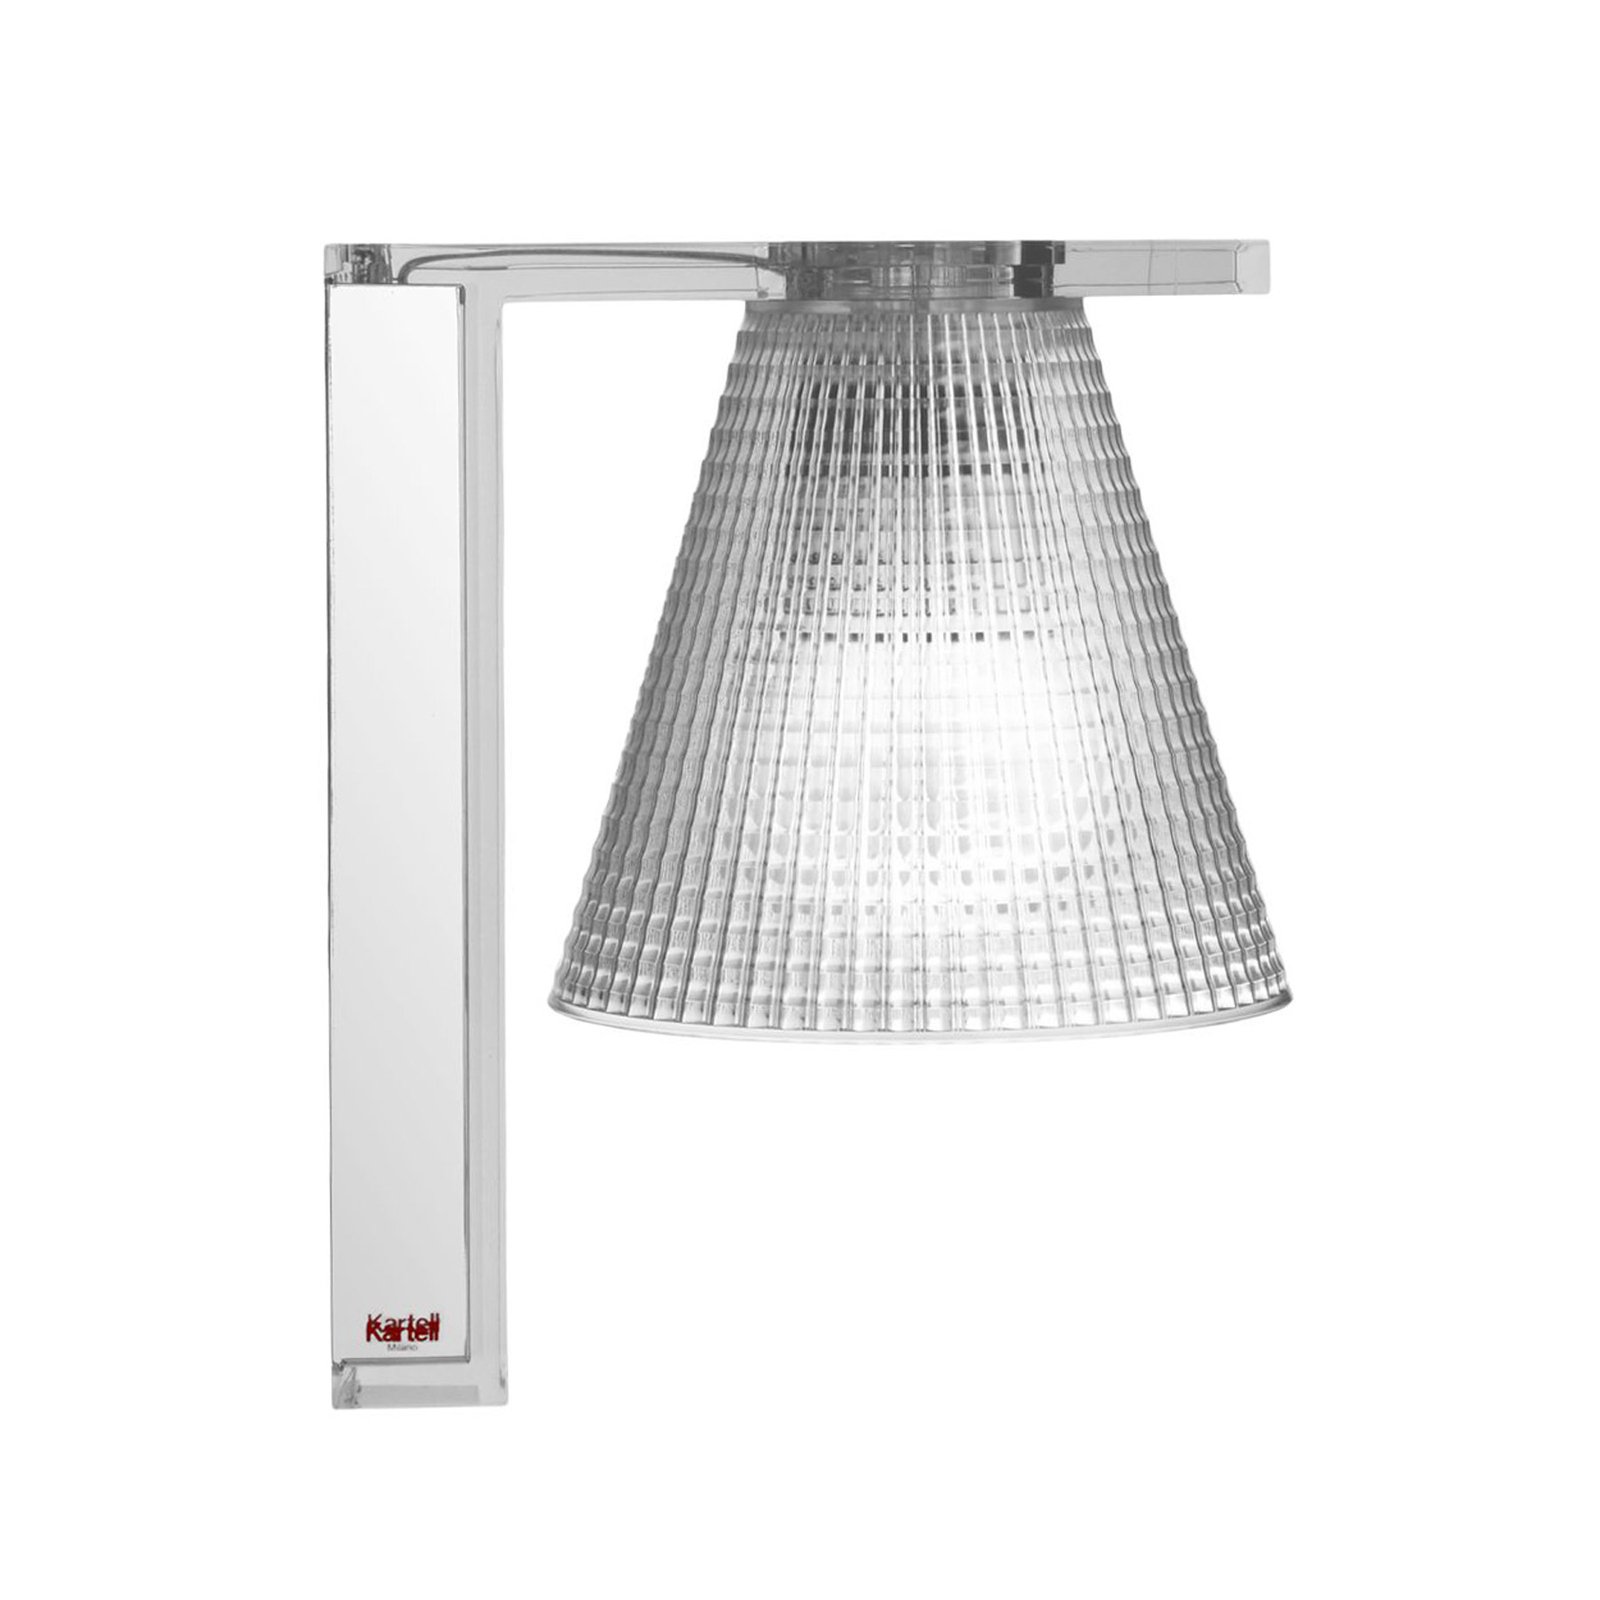 Kartell Light-Air aplique LED, transparente